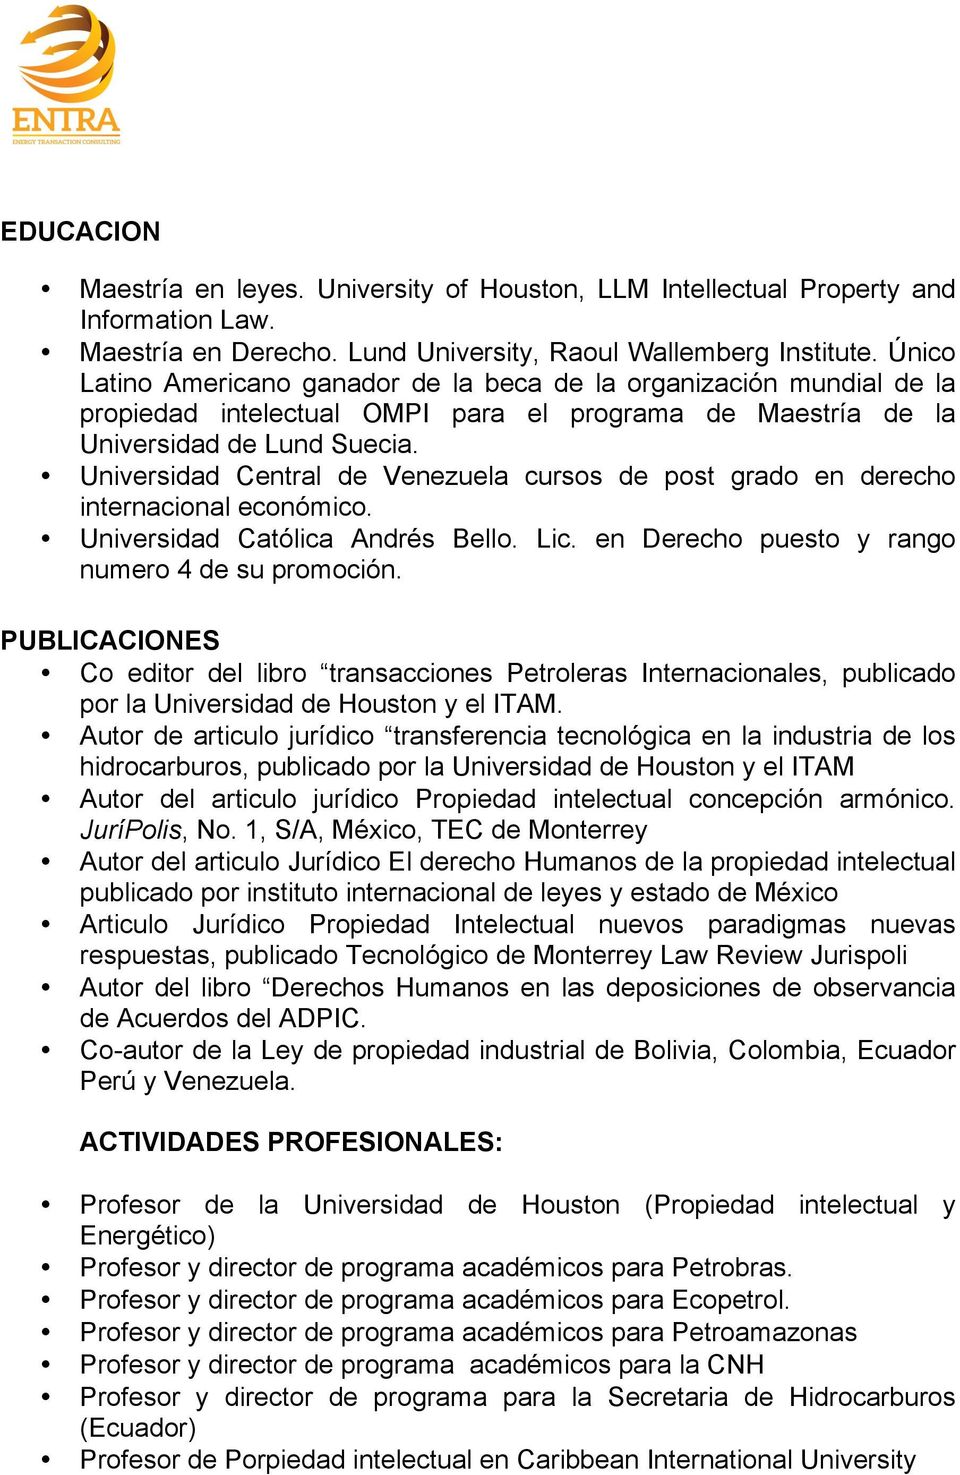 Universidad Central de Venezuela cursos de post grado en derecho internacional económico. Universidad Católica Andrés Bello. Lic. en Derecho puesto y rango numero 4 de su promoción.